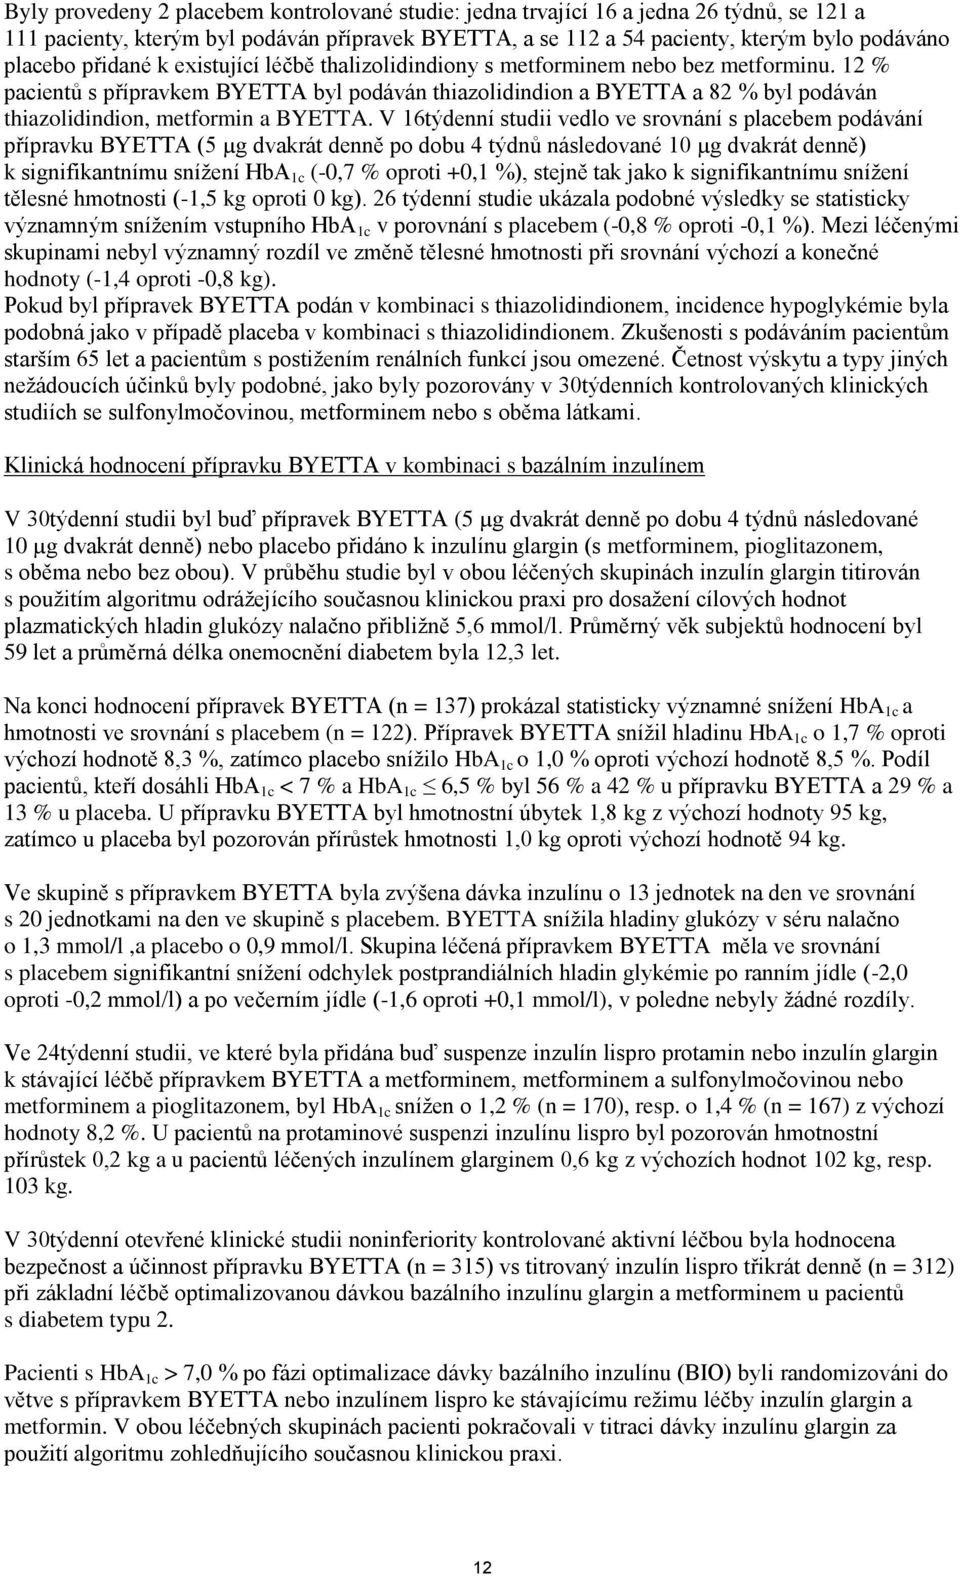 12 % pacientů s přípravkem BYETTA byl podáván thiazolidindion a BYETTA a 82 % byl podáván thiazolidindion, metformin a BYETTA.